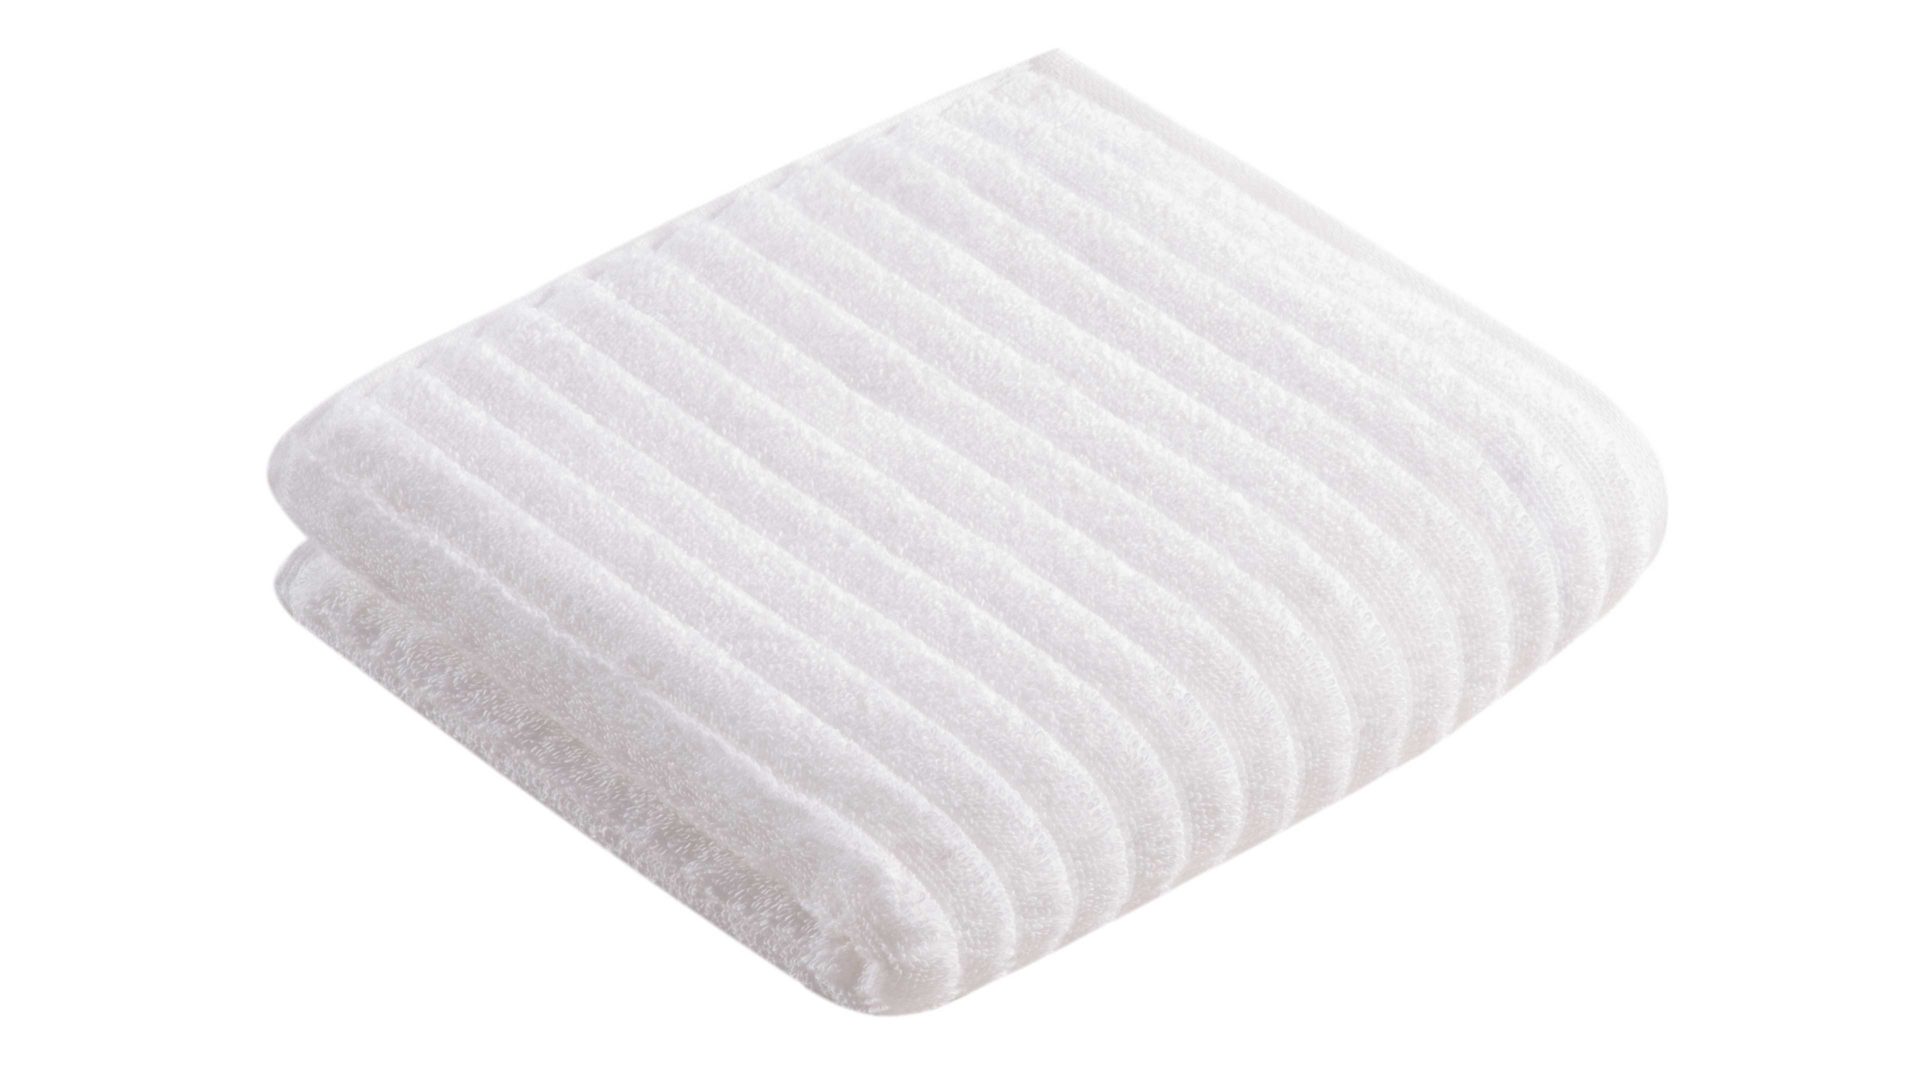 Handtuch Vossen aus Naturfaser in Weiß VOSSEN® Frottee-Serie Mystic - Handtuch weiße Baumwolle - ca. 50 x 100 cm